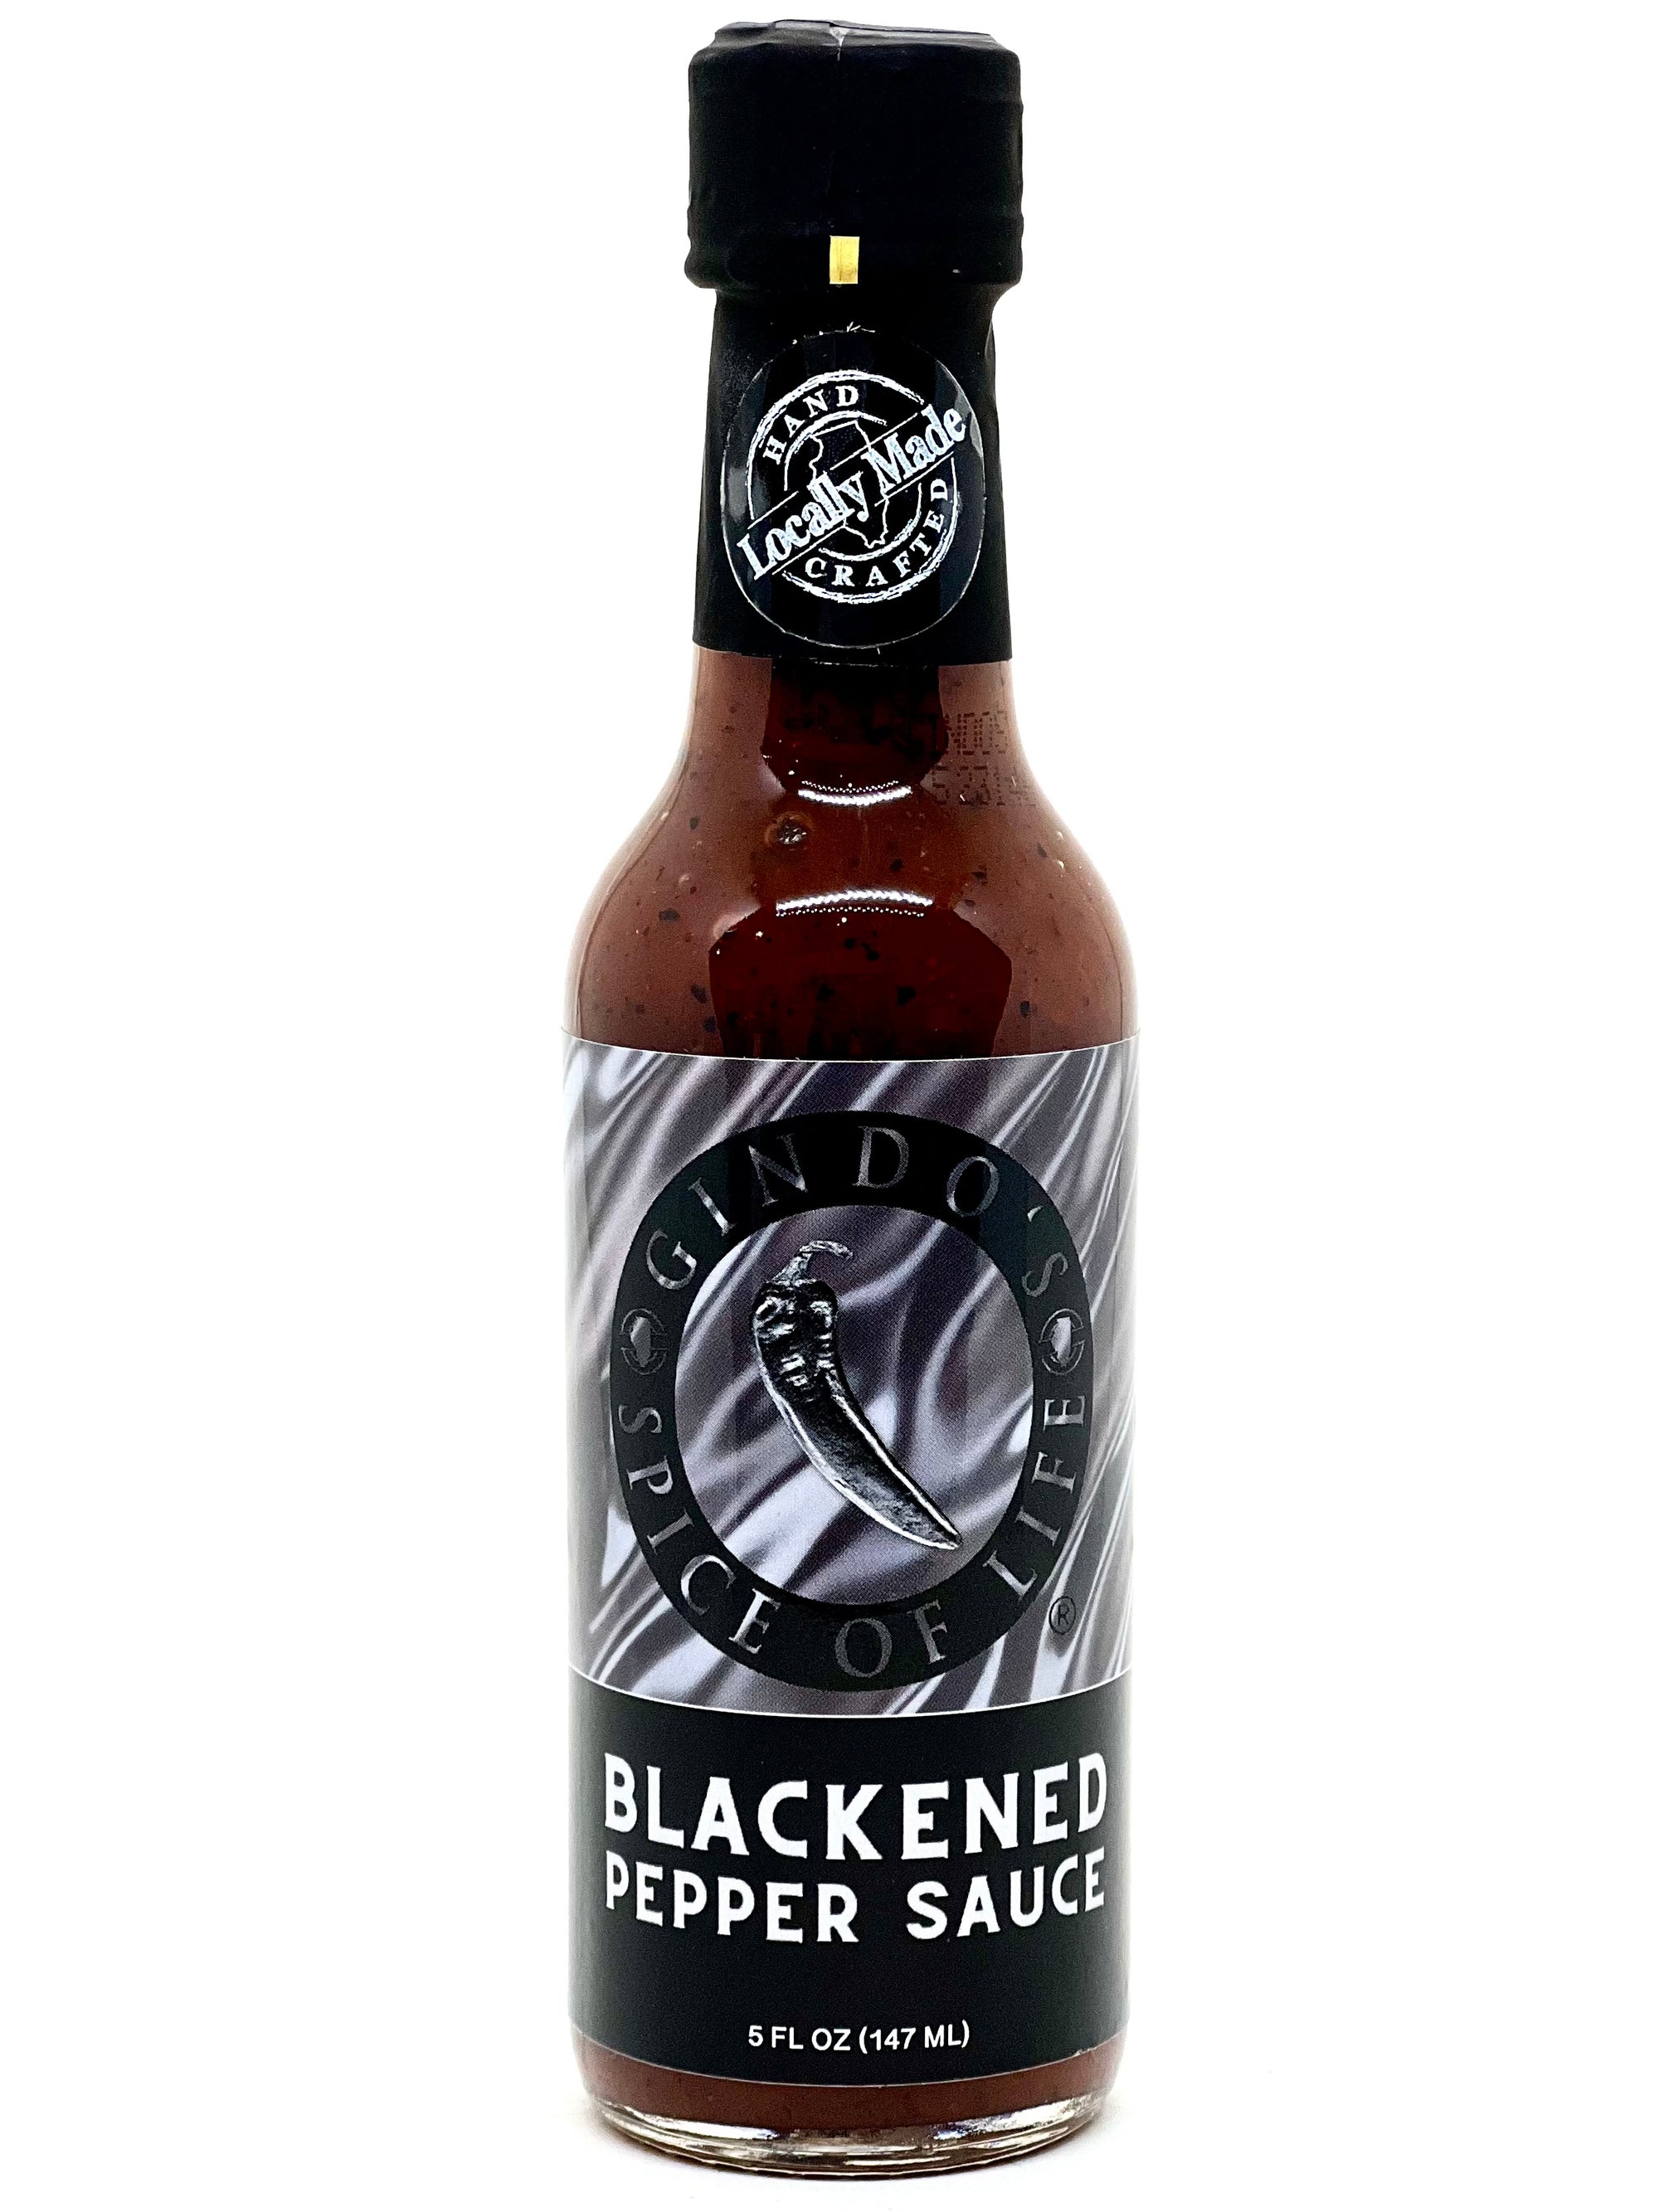 Blackened Pepper Sauce